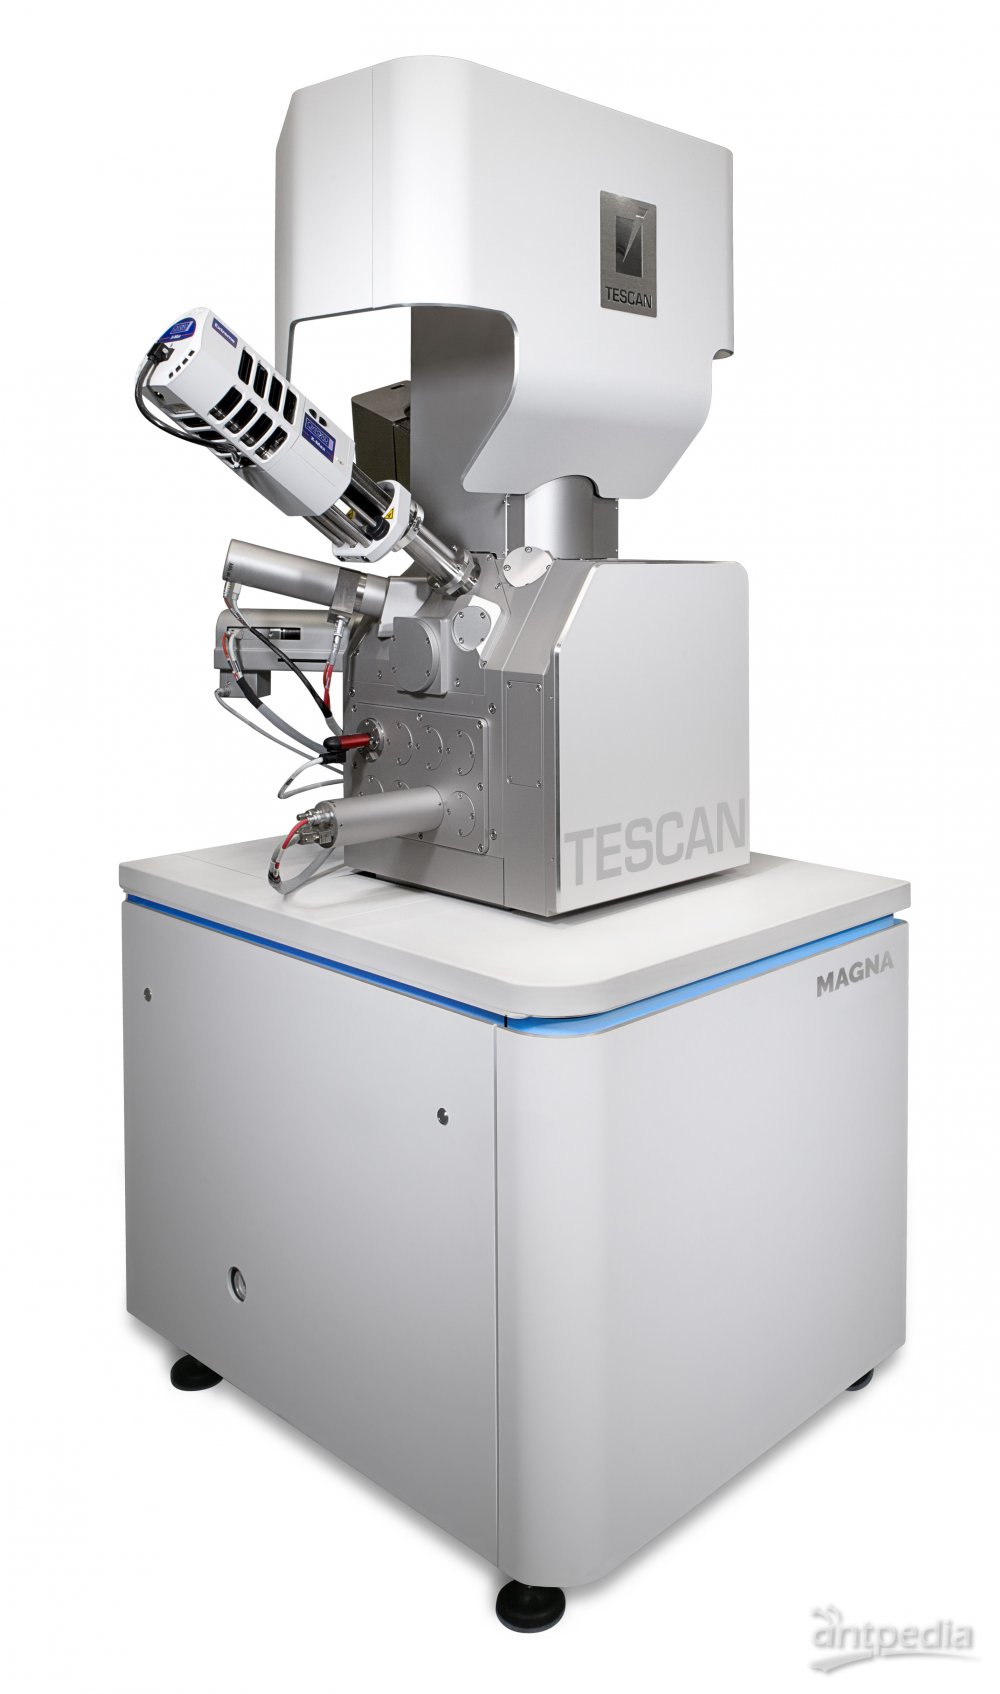 TESCAN MAGNA 超高分辨场发射扫描电镜 用于无涂层生物样品